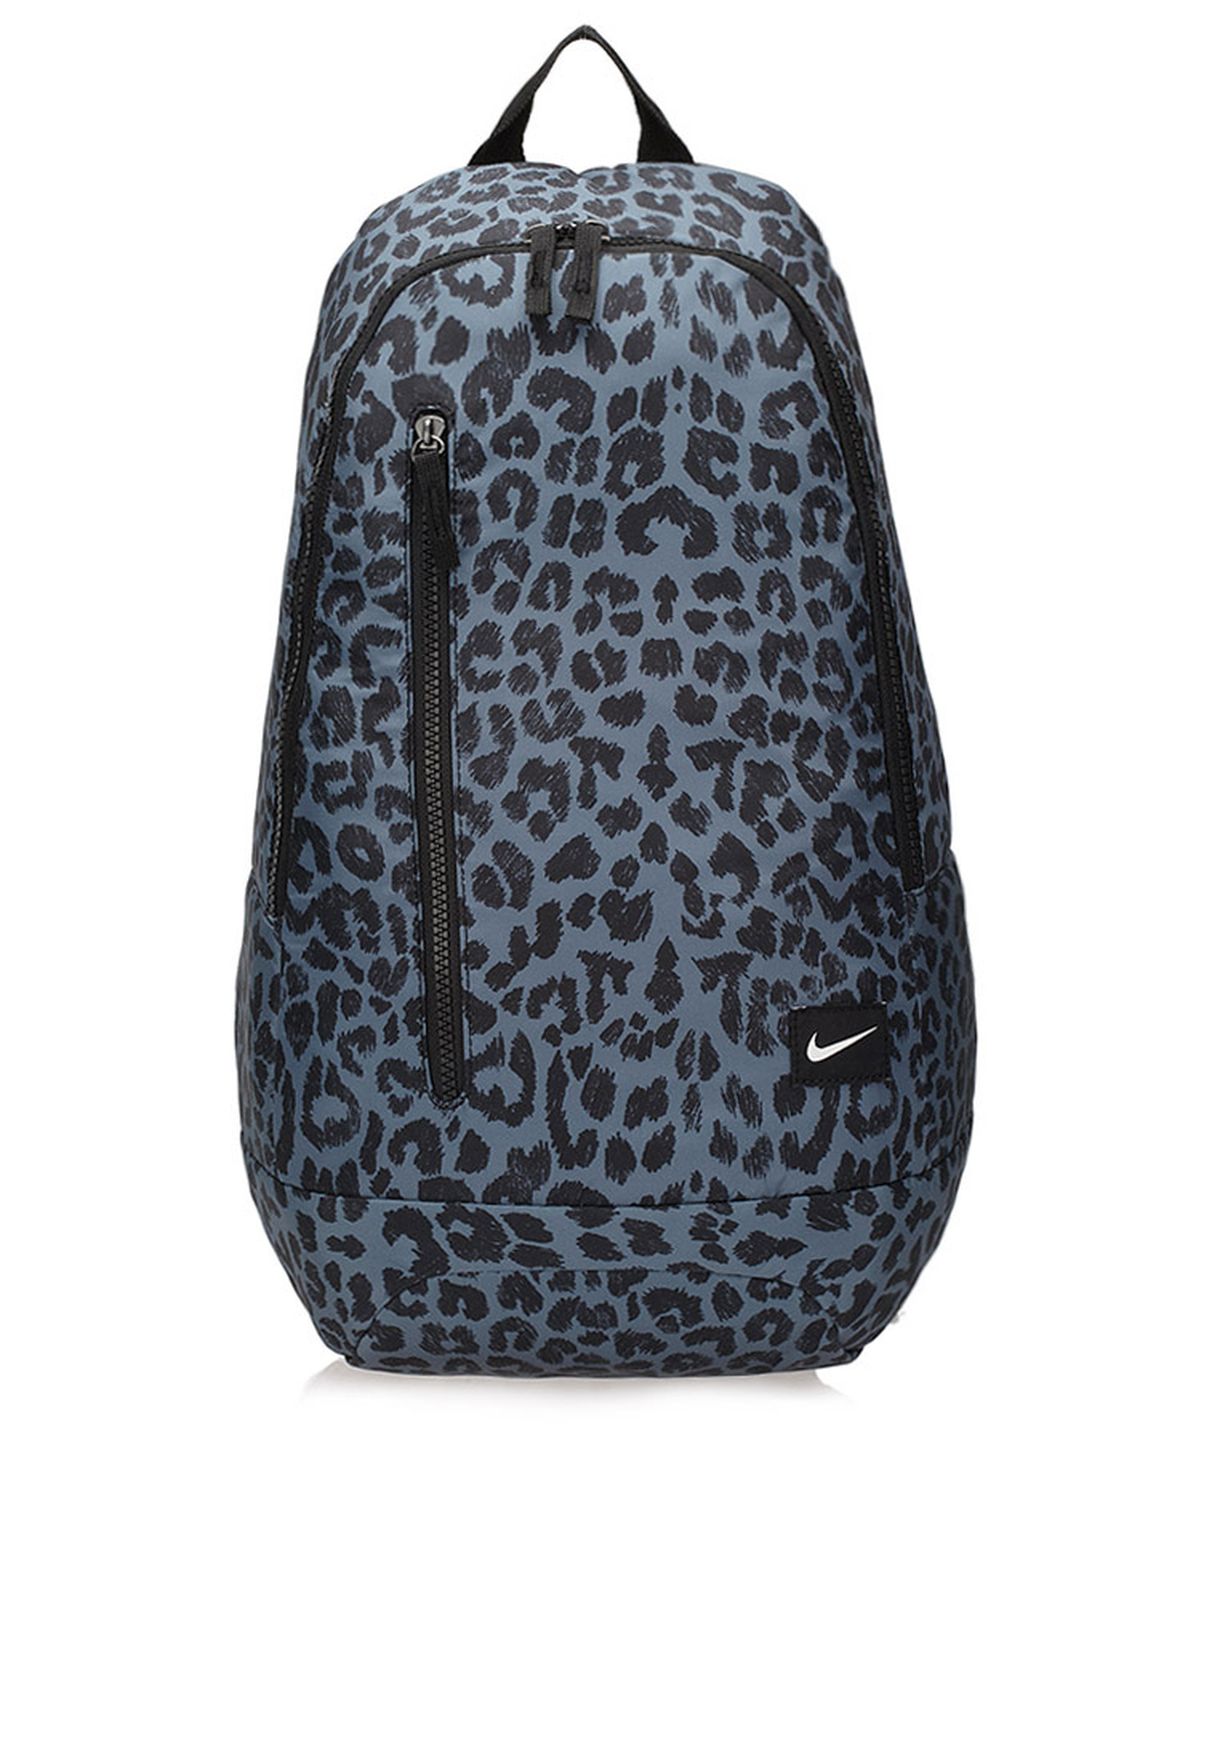 nike backpack leopard